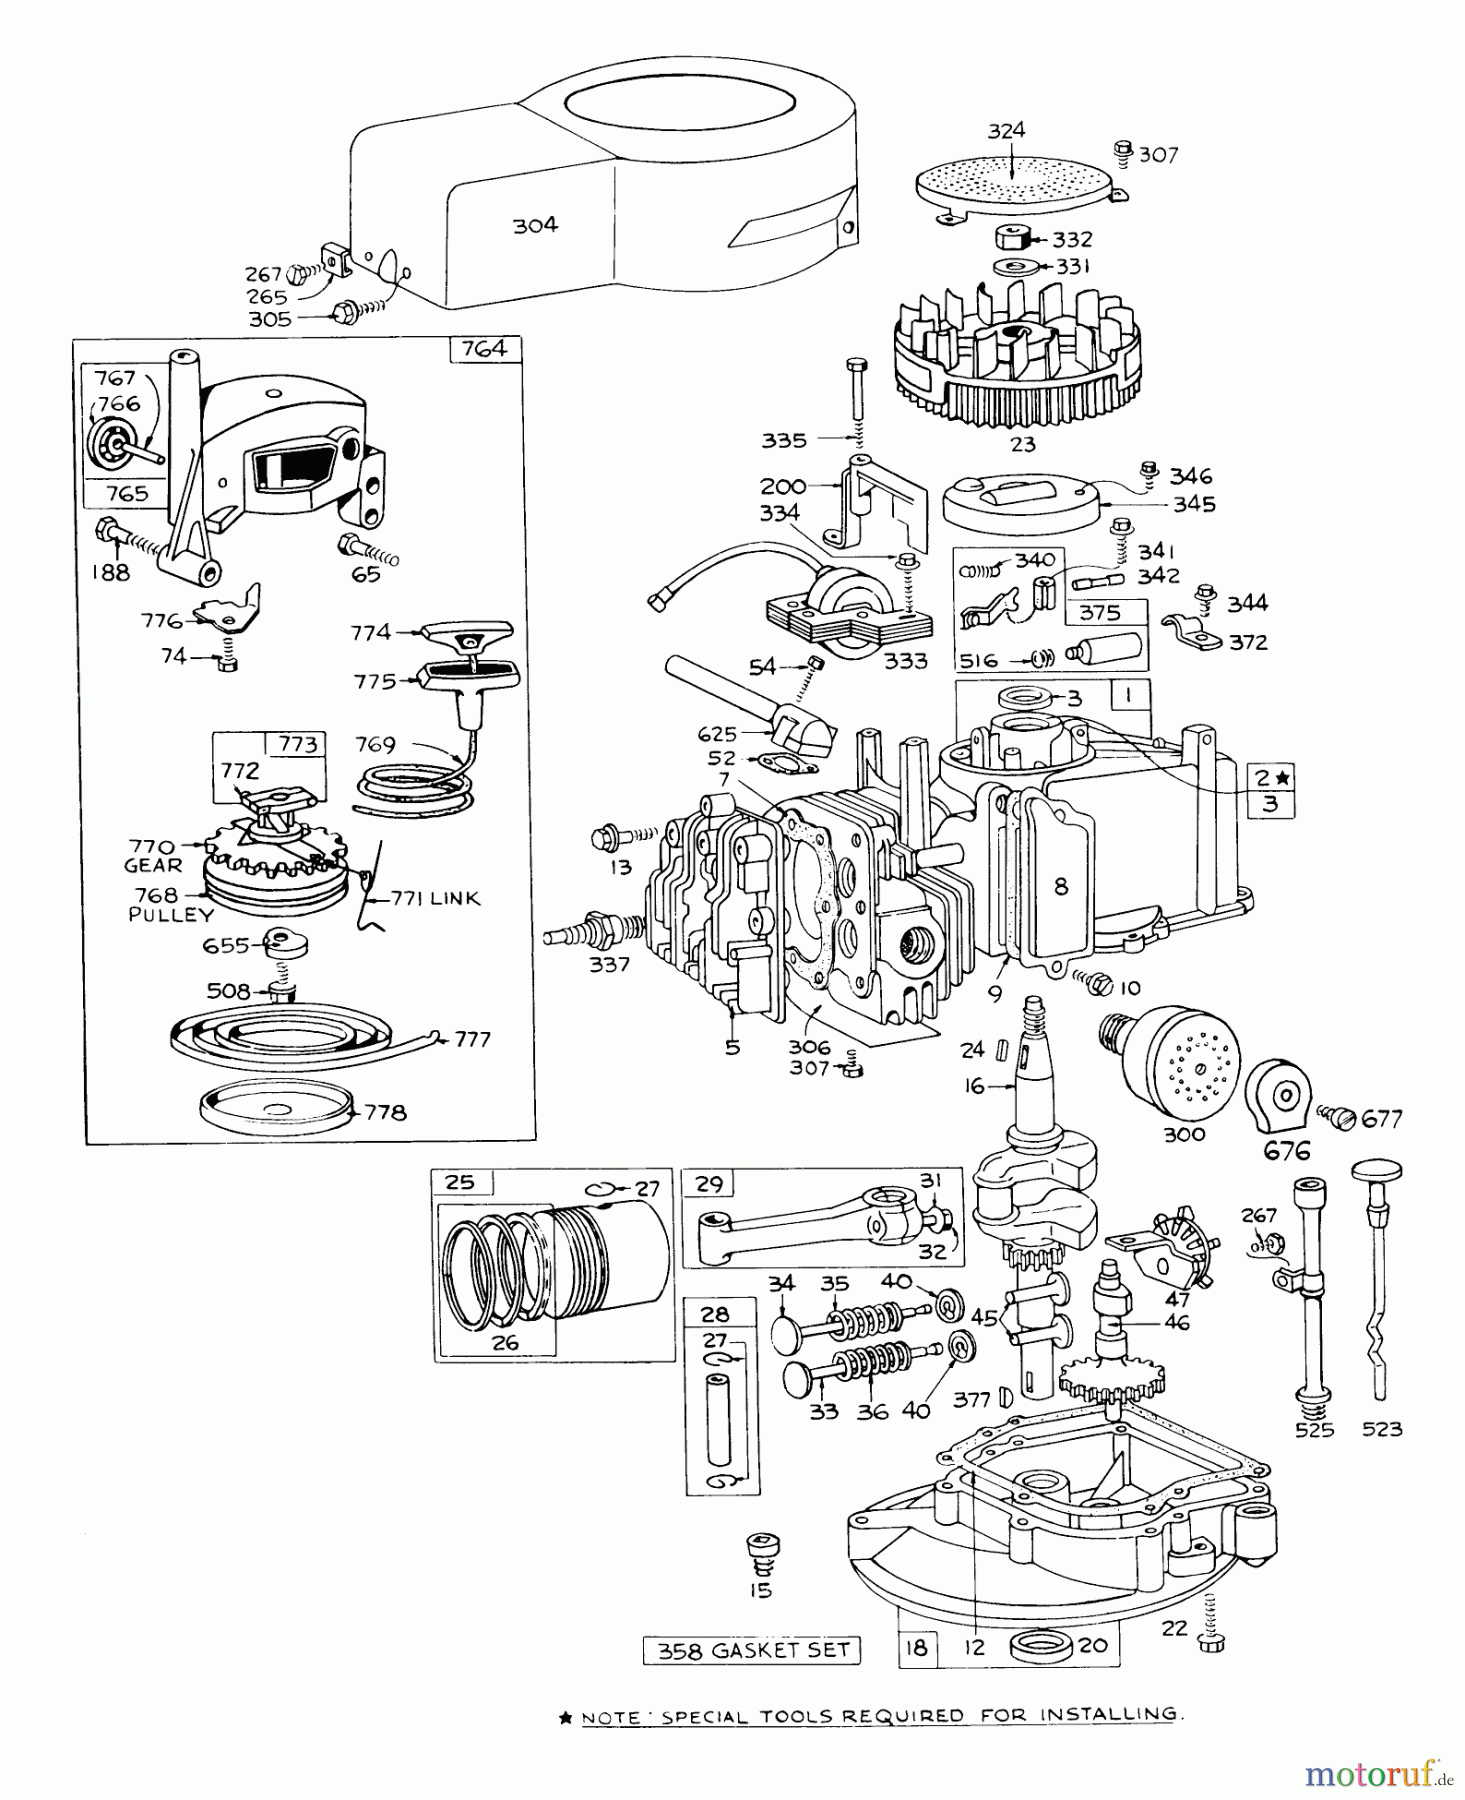  Toro Neu Mowers, Walk-Behind Seite 1 16073 - Toro Whirlwind Lawnmower, 1973 (3000001-3999999) ENGINE BRIGGS & STRATTON - MODEL 92908-1224-01 FOR 21